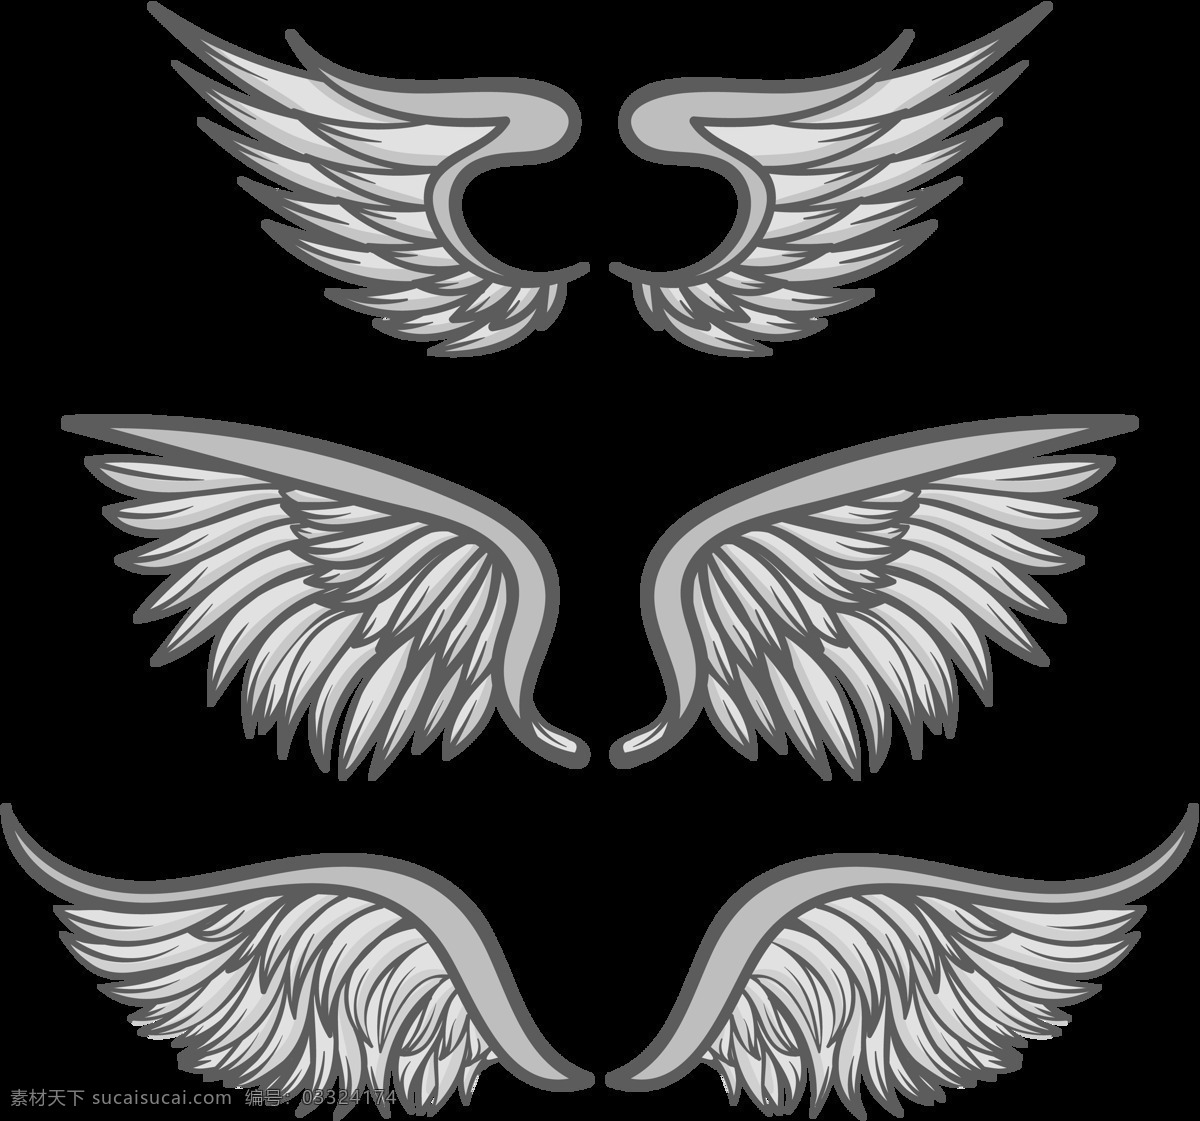 写实 鸟类 翅膀 免 抠 透明 图 层 写实鸟类翅膀 手绘翅膀 翅膀元素 小 天使 卡通翅膀 翅膀图片素材 纹身图案 翅膀素材 手绘翅膀图片